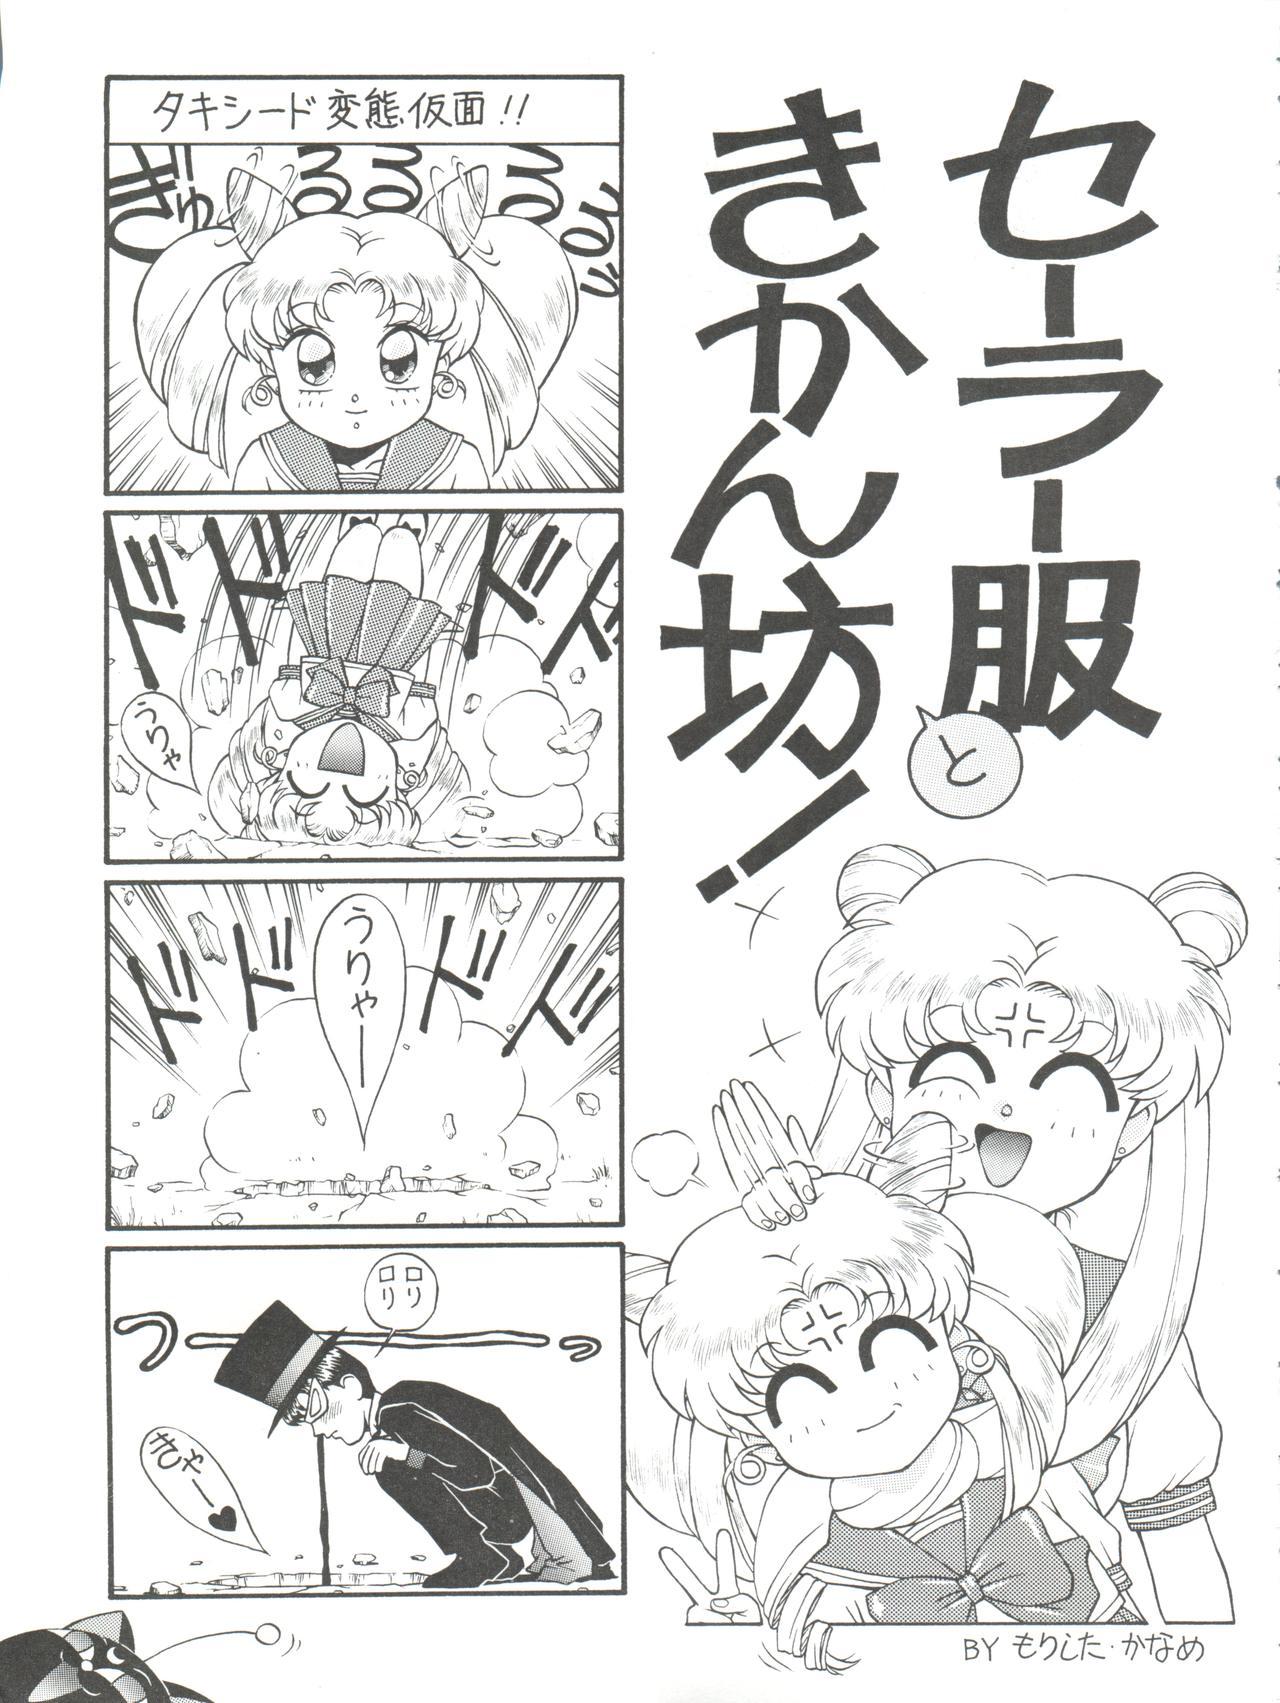 Farting NANIWA-YA FINAL DRESS UP! - Sailor moon Slayers Hime-chans ribbon Ng knight lamune and 40 Brave express might gaine Girl On Girl - Page 11